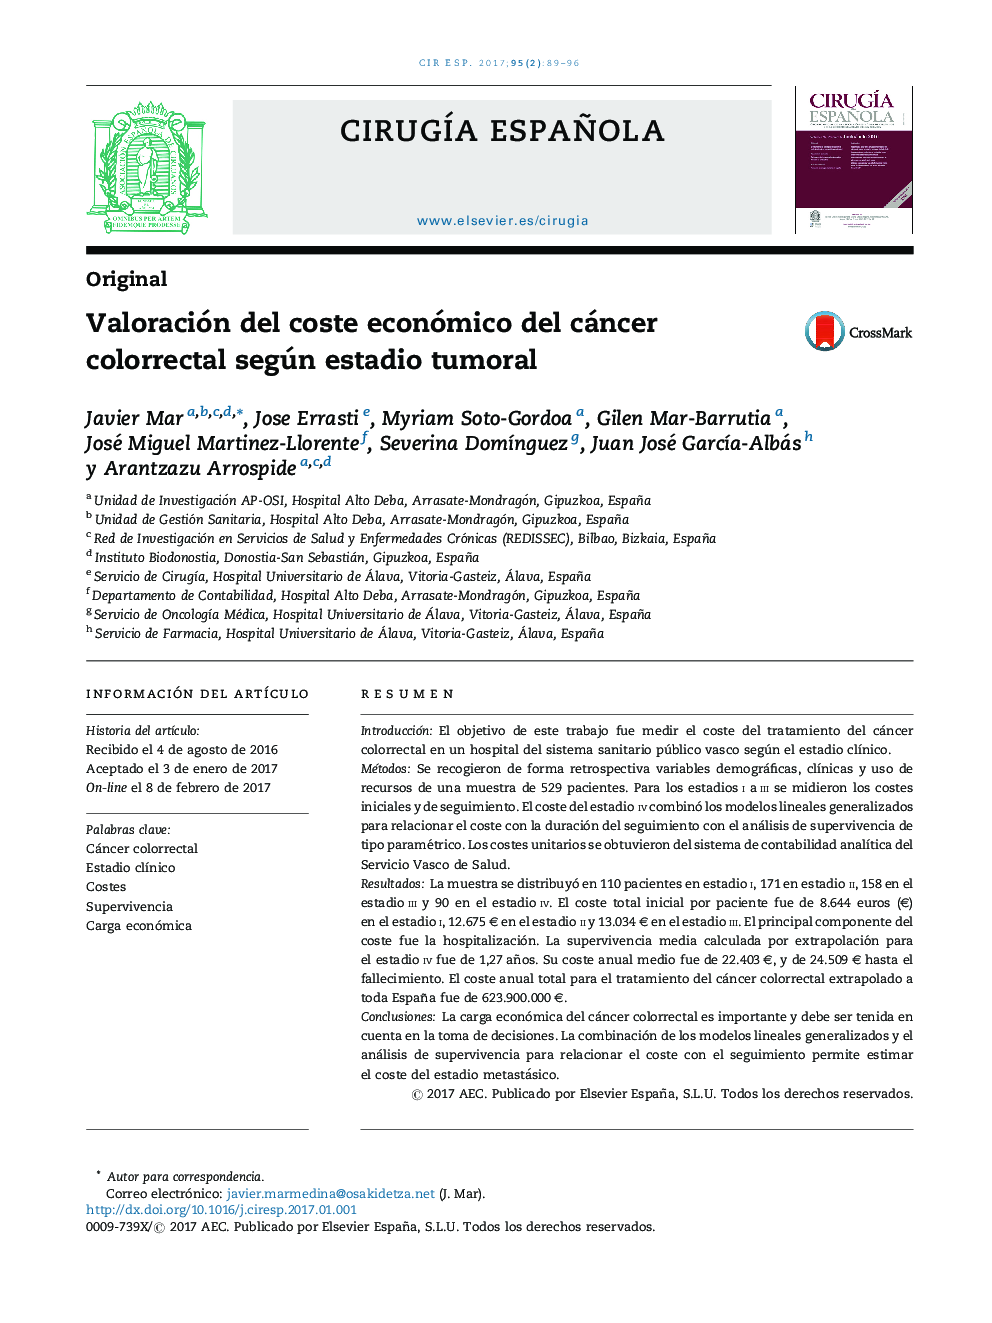 ارزیابی هزینه اقتصادی سرطان کولورکتال بر اساس مرحله تومور 